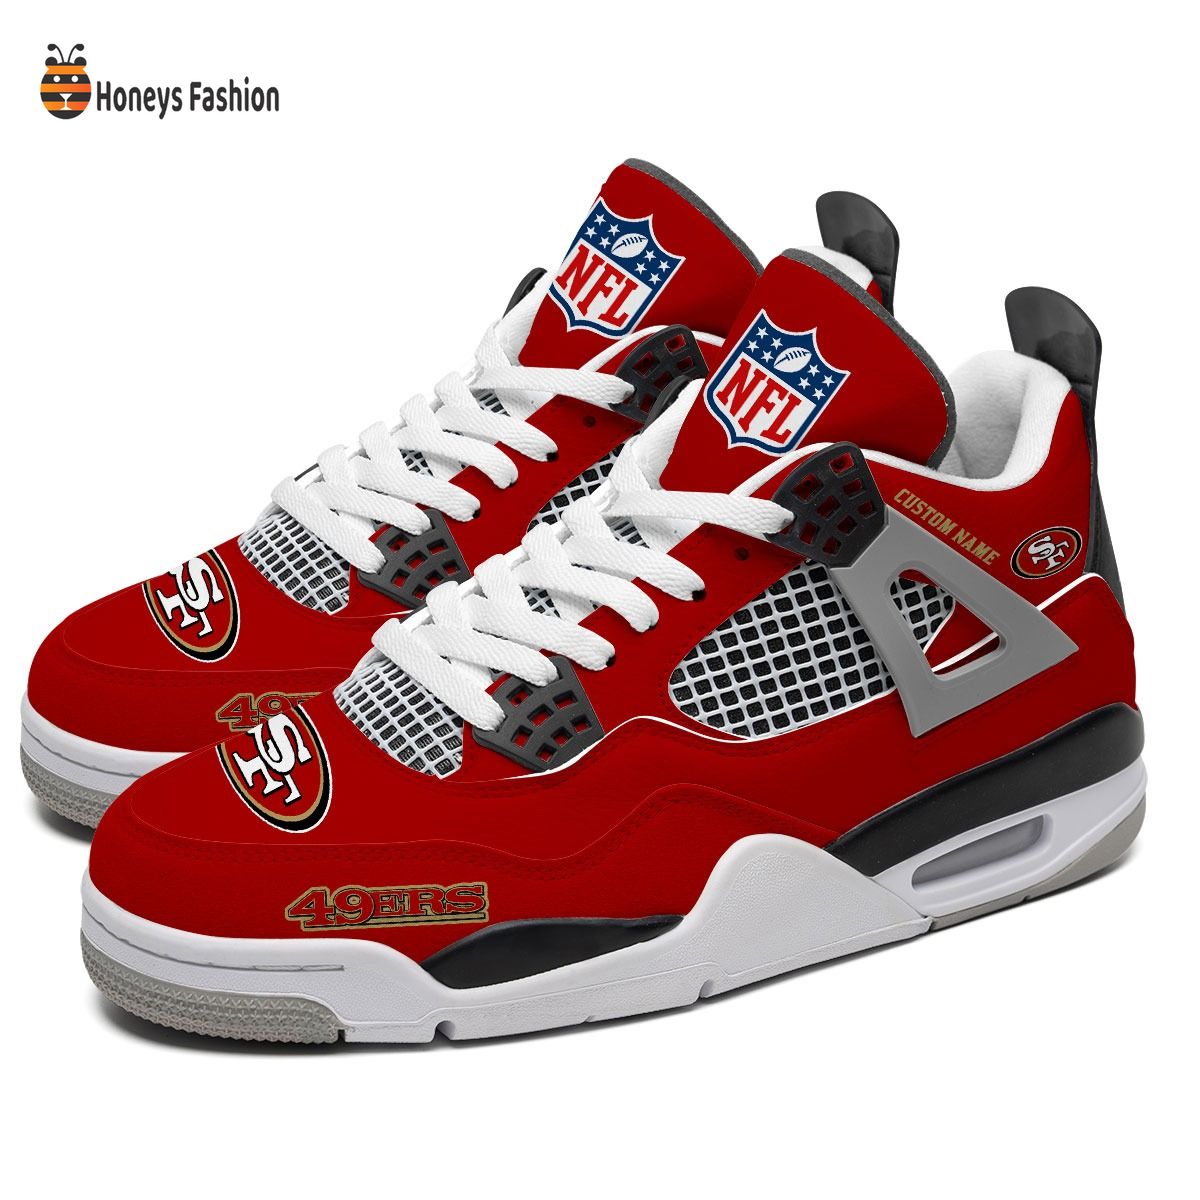 San Francisco 49ers NFL Air Jordan 4 Shoes - Honeysfashion